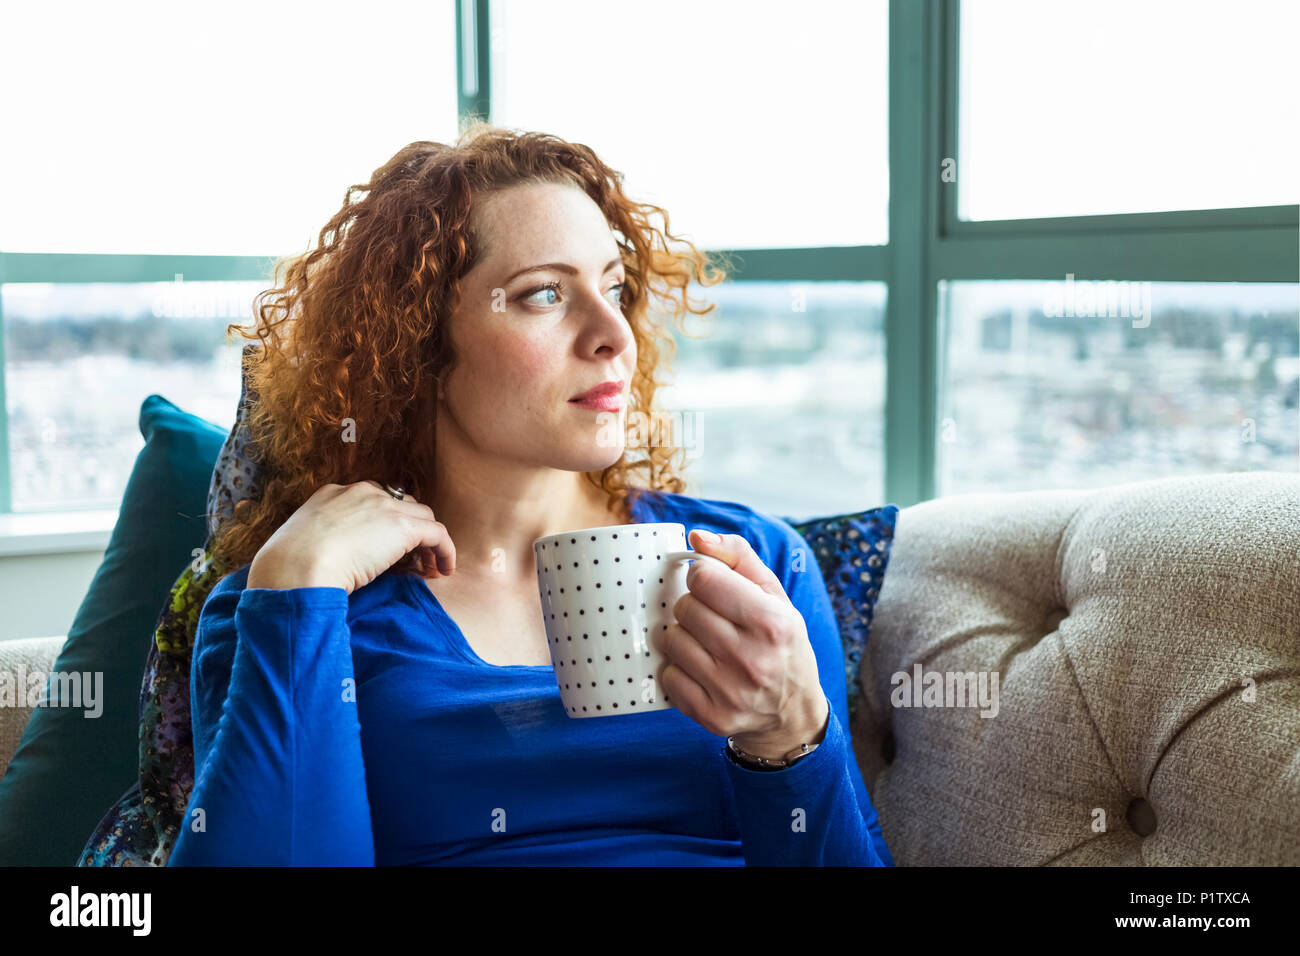 Donna con rosso, capelli ricci seduta con una tazza guardando fuori dalla finestra; Surrey, British Columbia, Canada Foto Stock